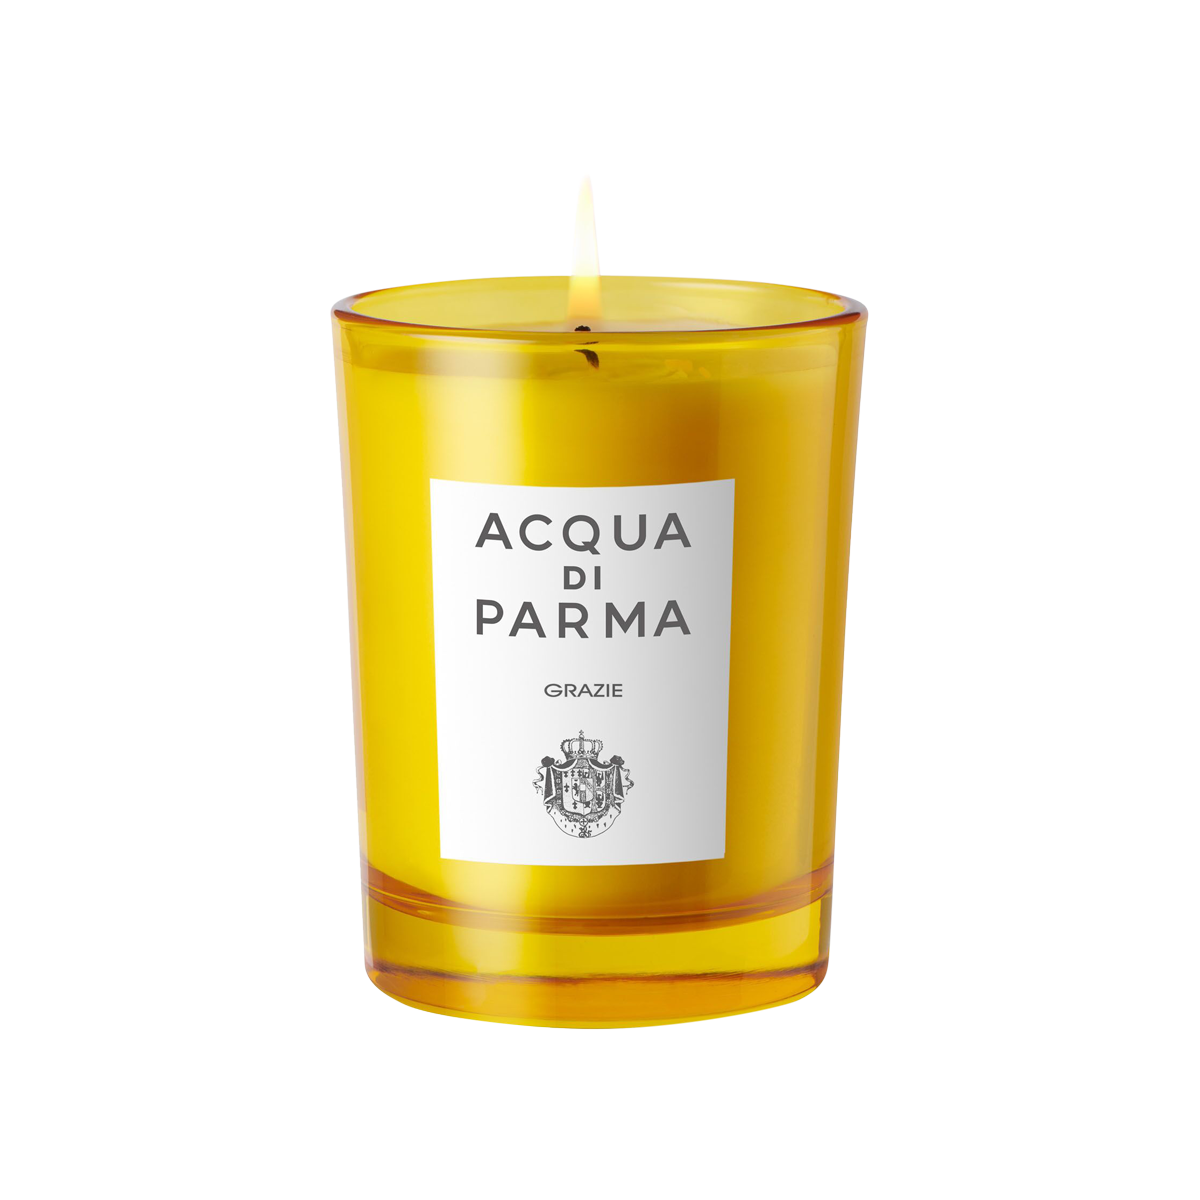 Acqua di Parma - Grazie Candle